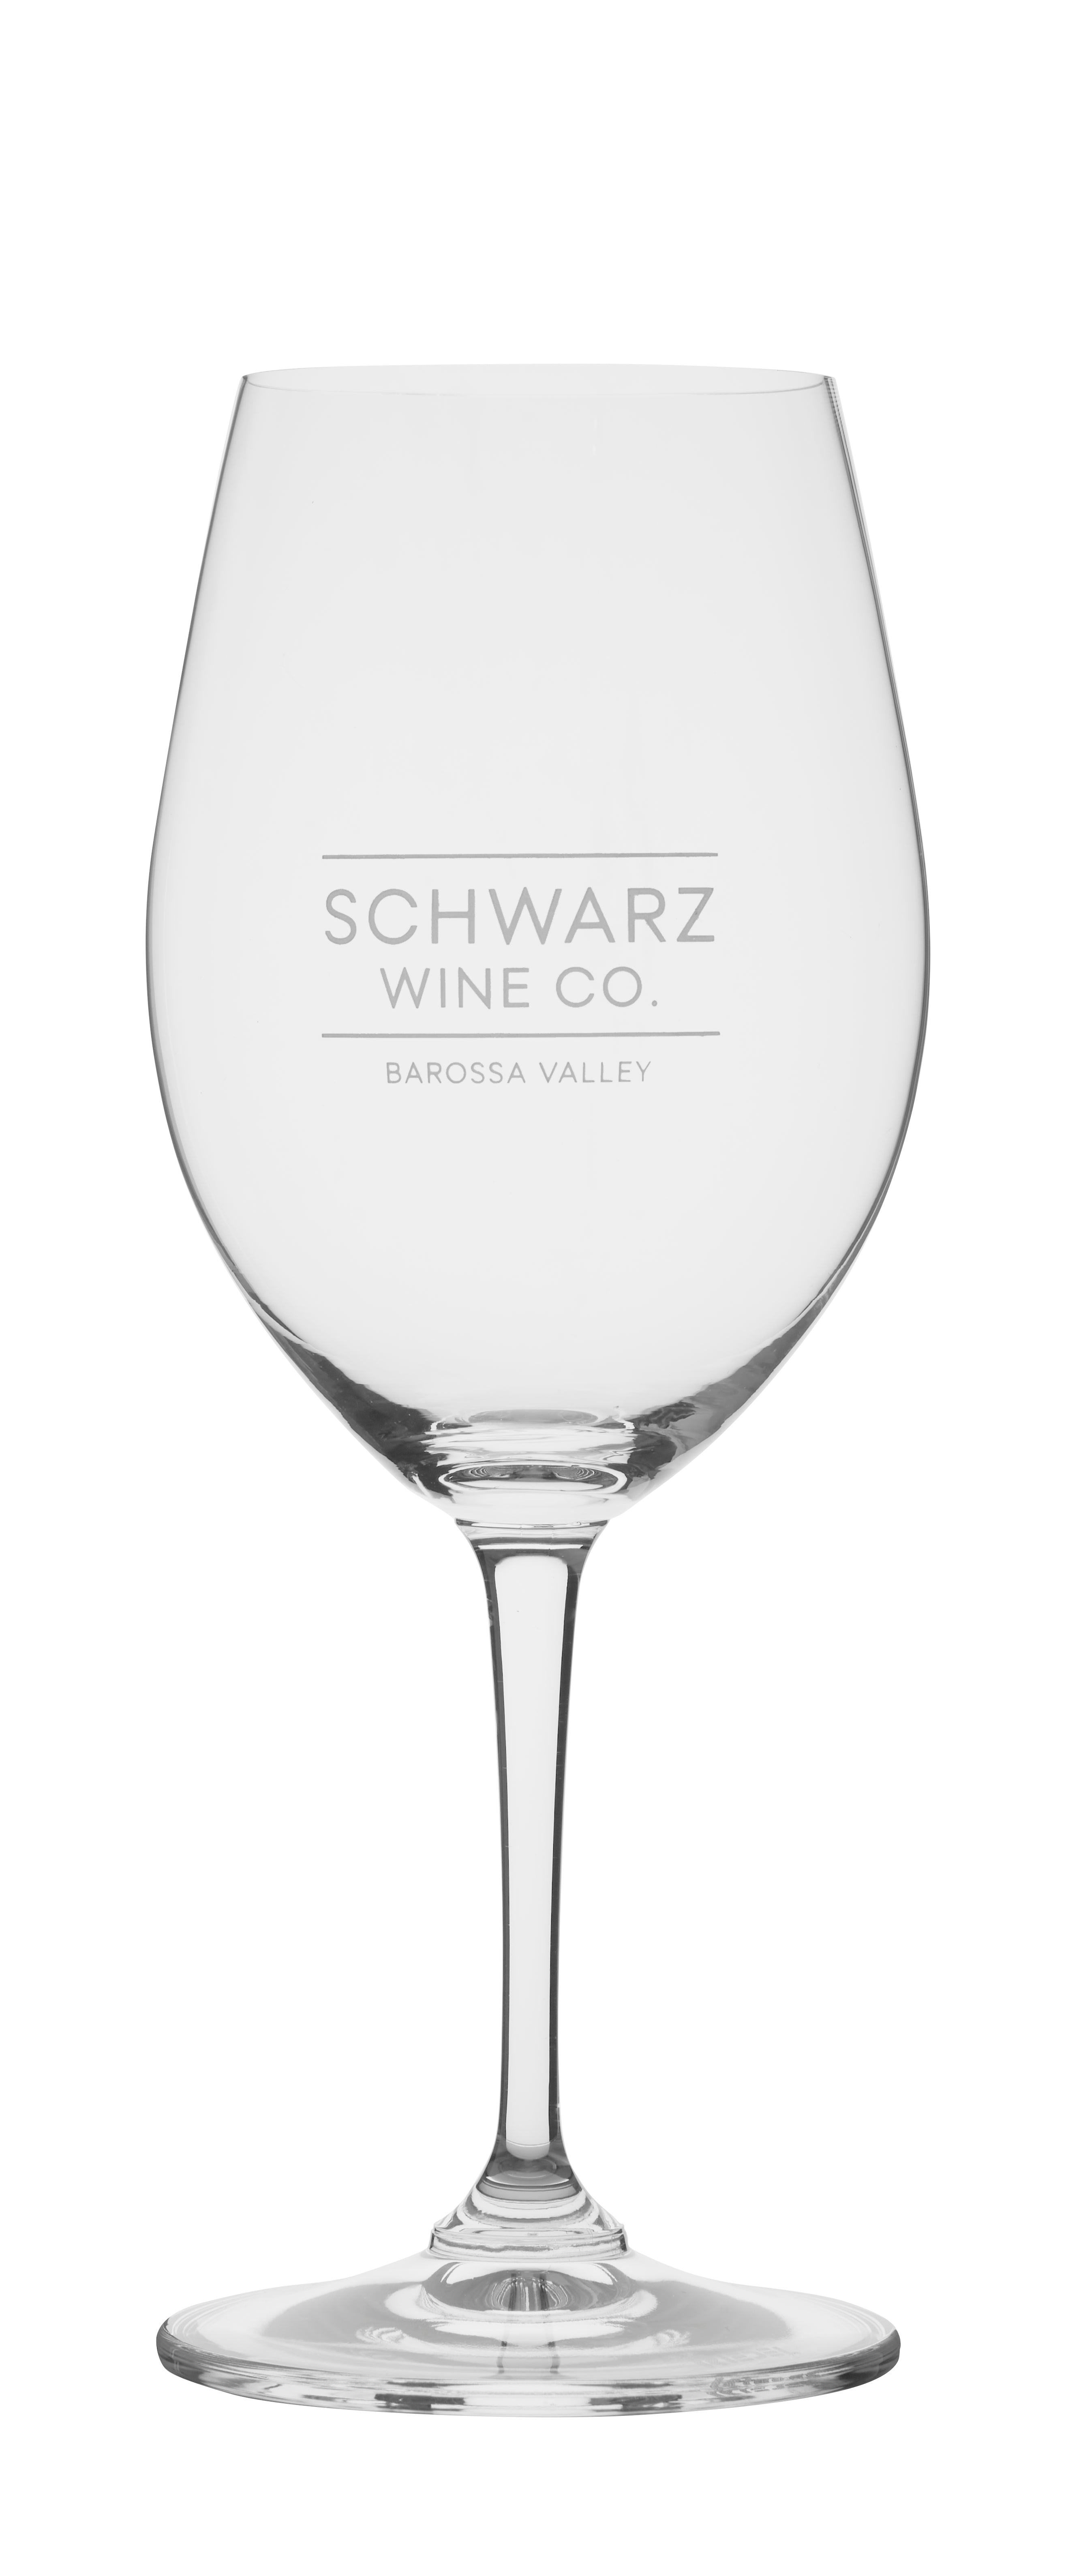 Schwarz Wine Co. branded glasses